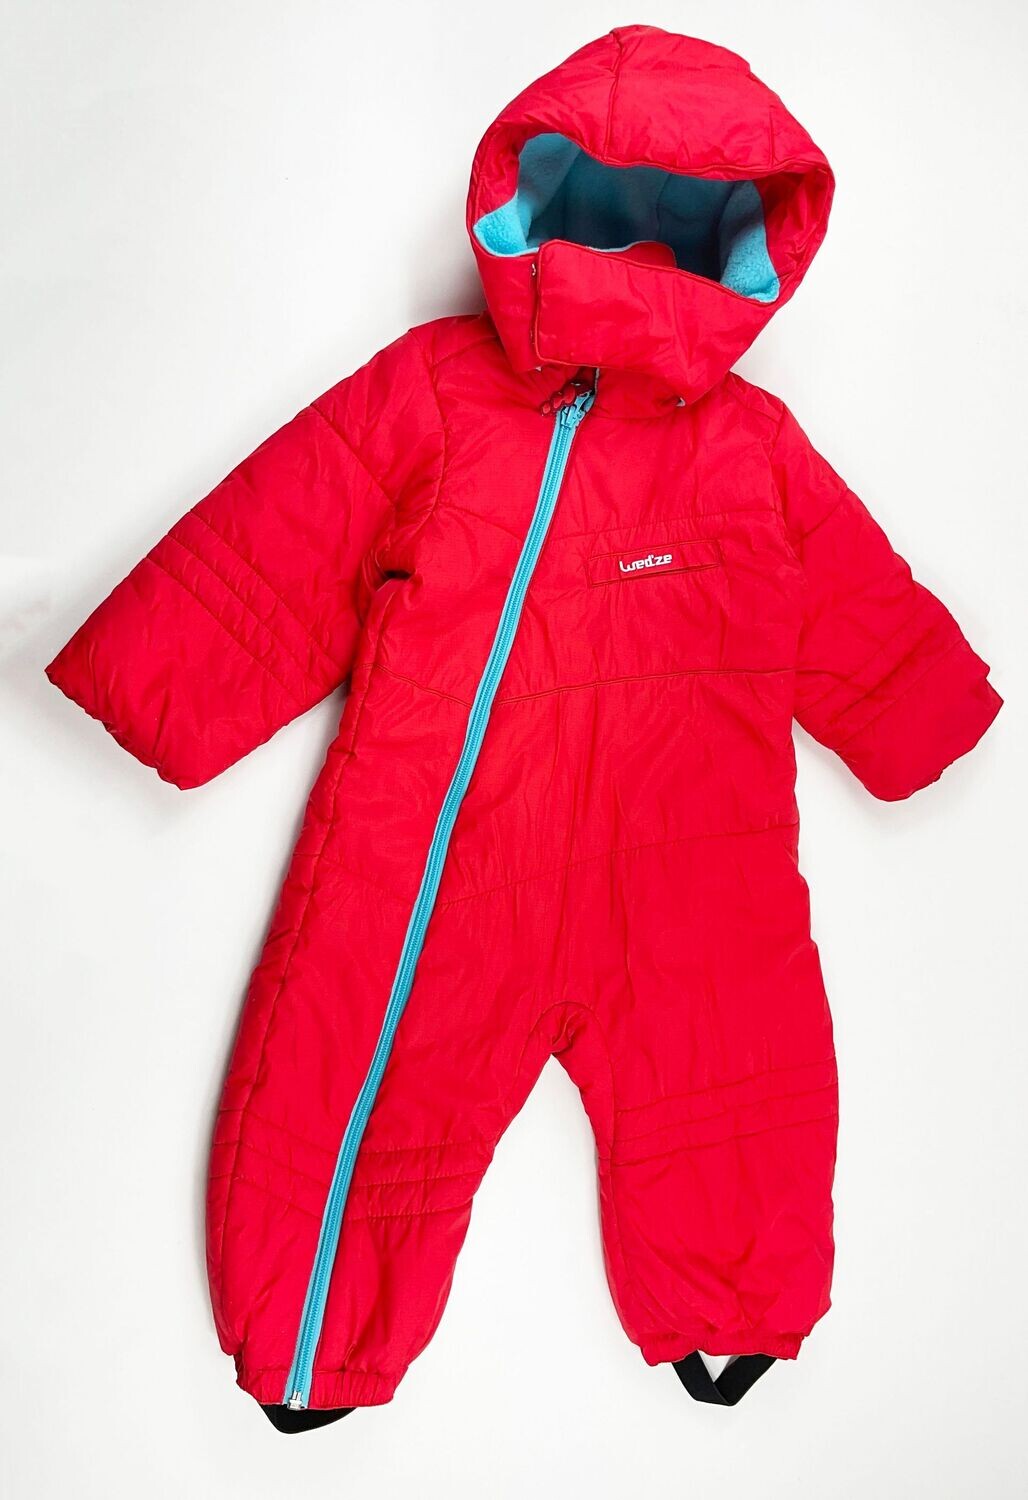 WED'ZE - Combinaison ski rouge et bleu intérieur polaire - 18 mois